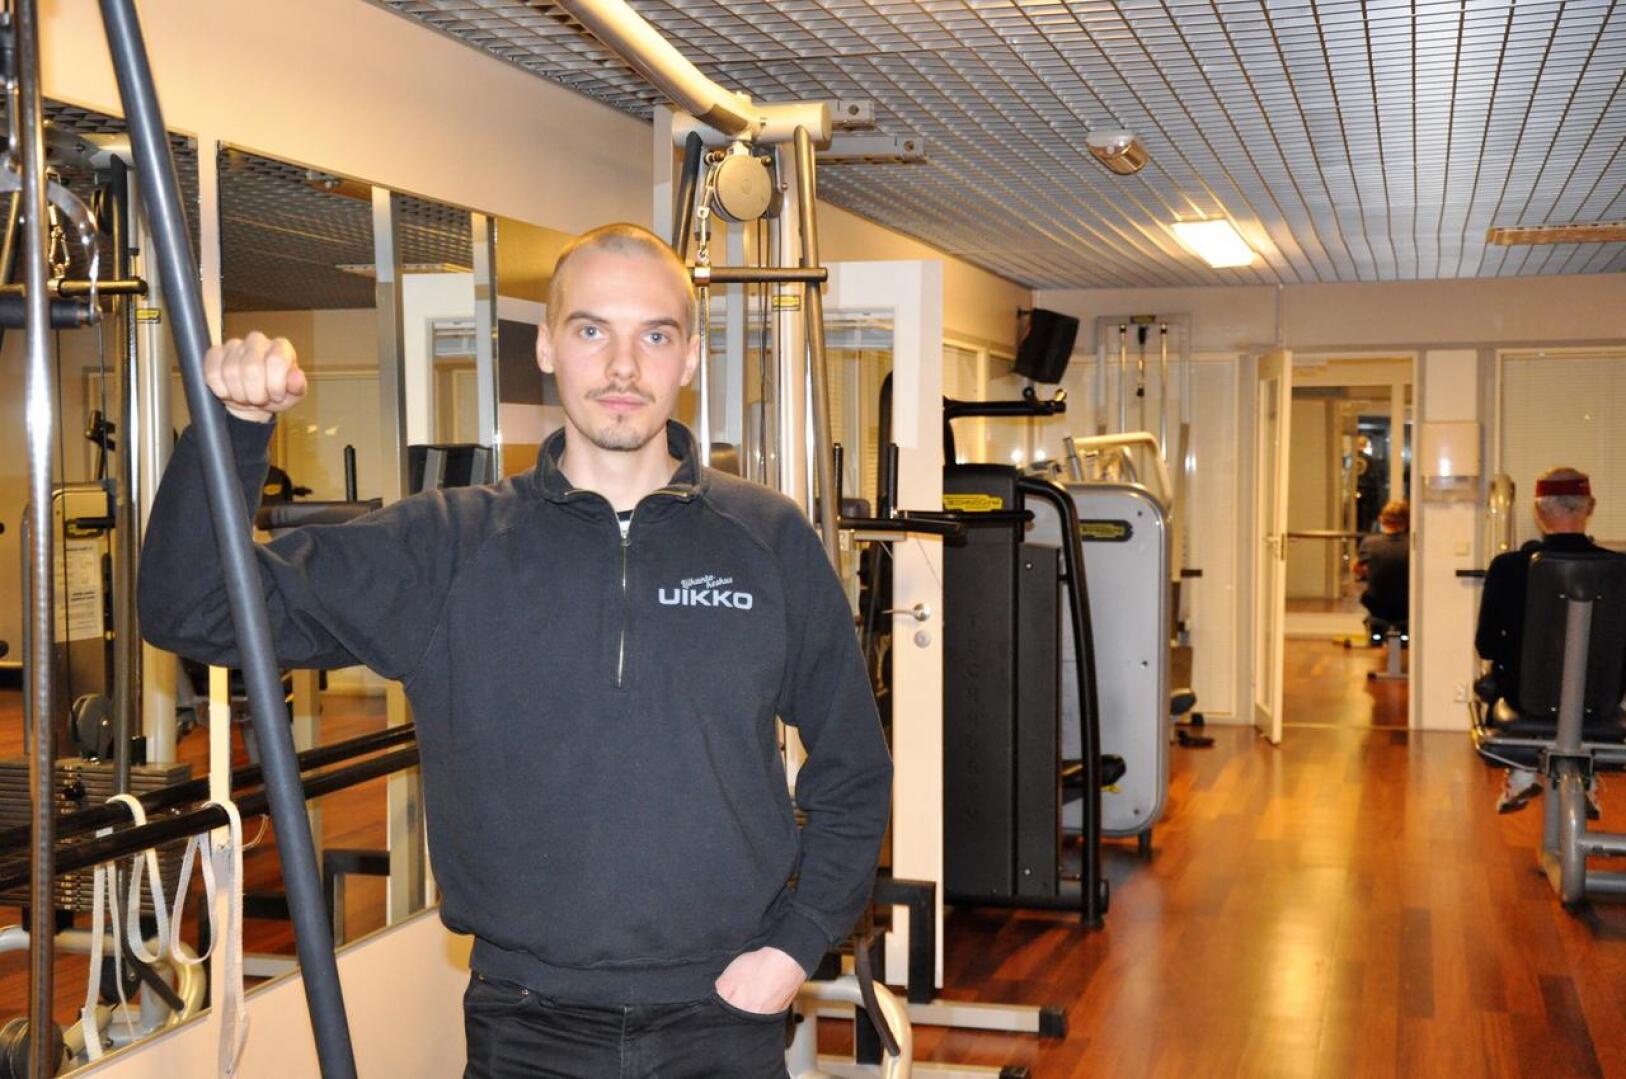 Nivalan liikuntakeskus Uikko on Miika Tenhusen työpaikka. Kuntosalilta löytyy monipuoliset laitteet ja välineet harjoitteluun.